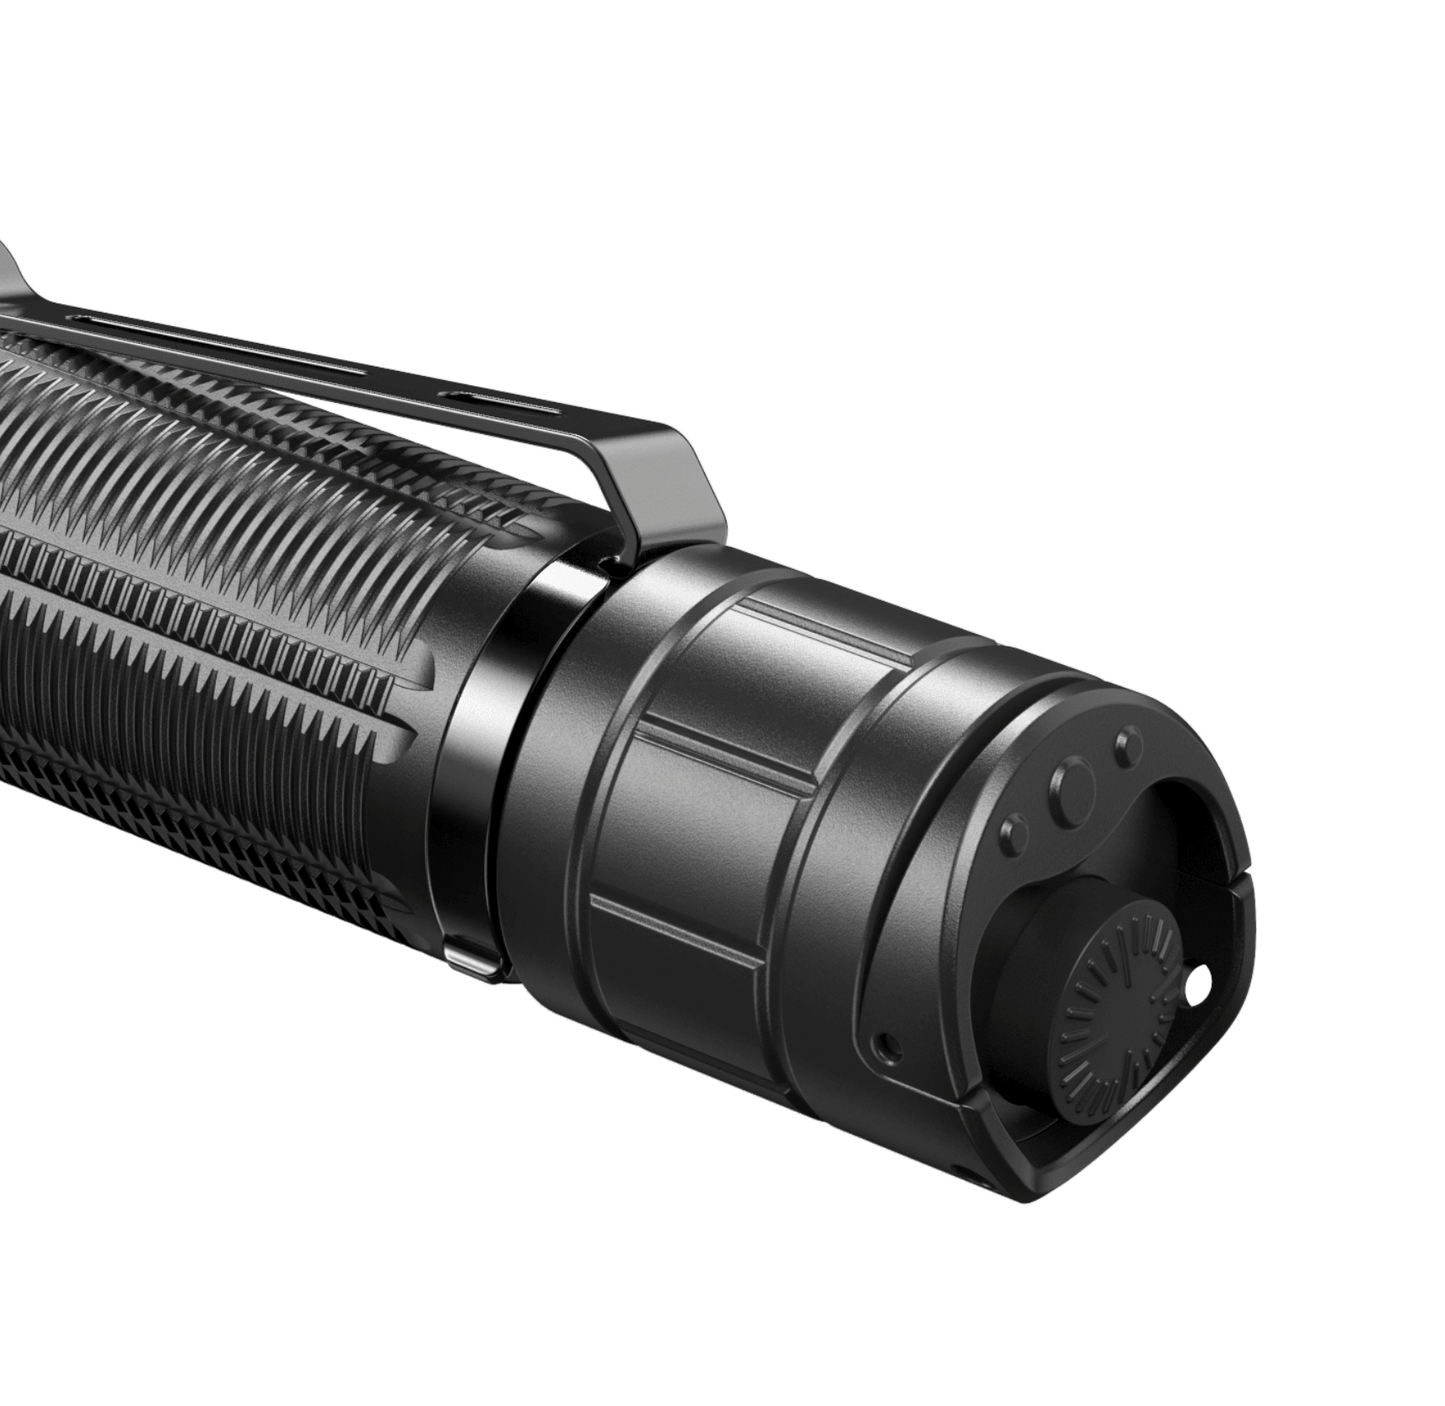 Klarus XT11GT PRO v2.0 (Ficklampor) från Klarus. | TacNGear - Utrustning för polis och militär och outdoor.